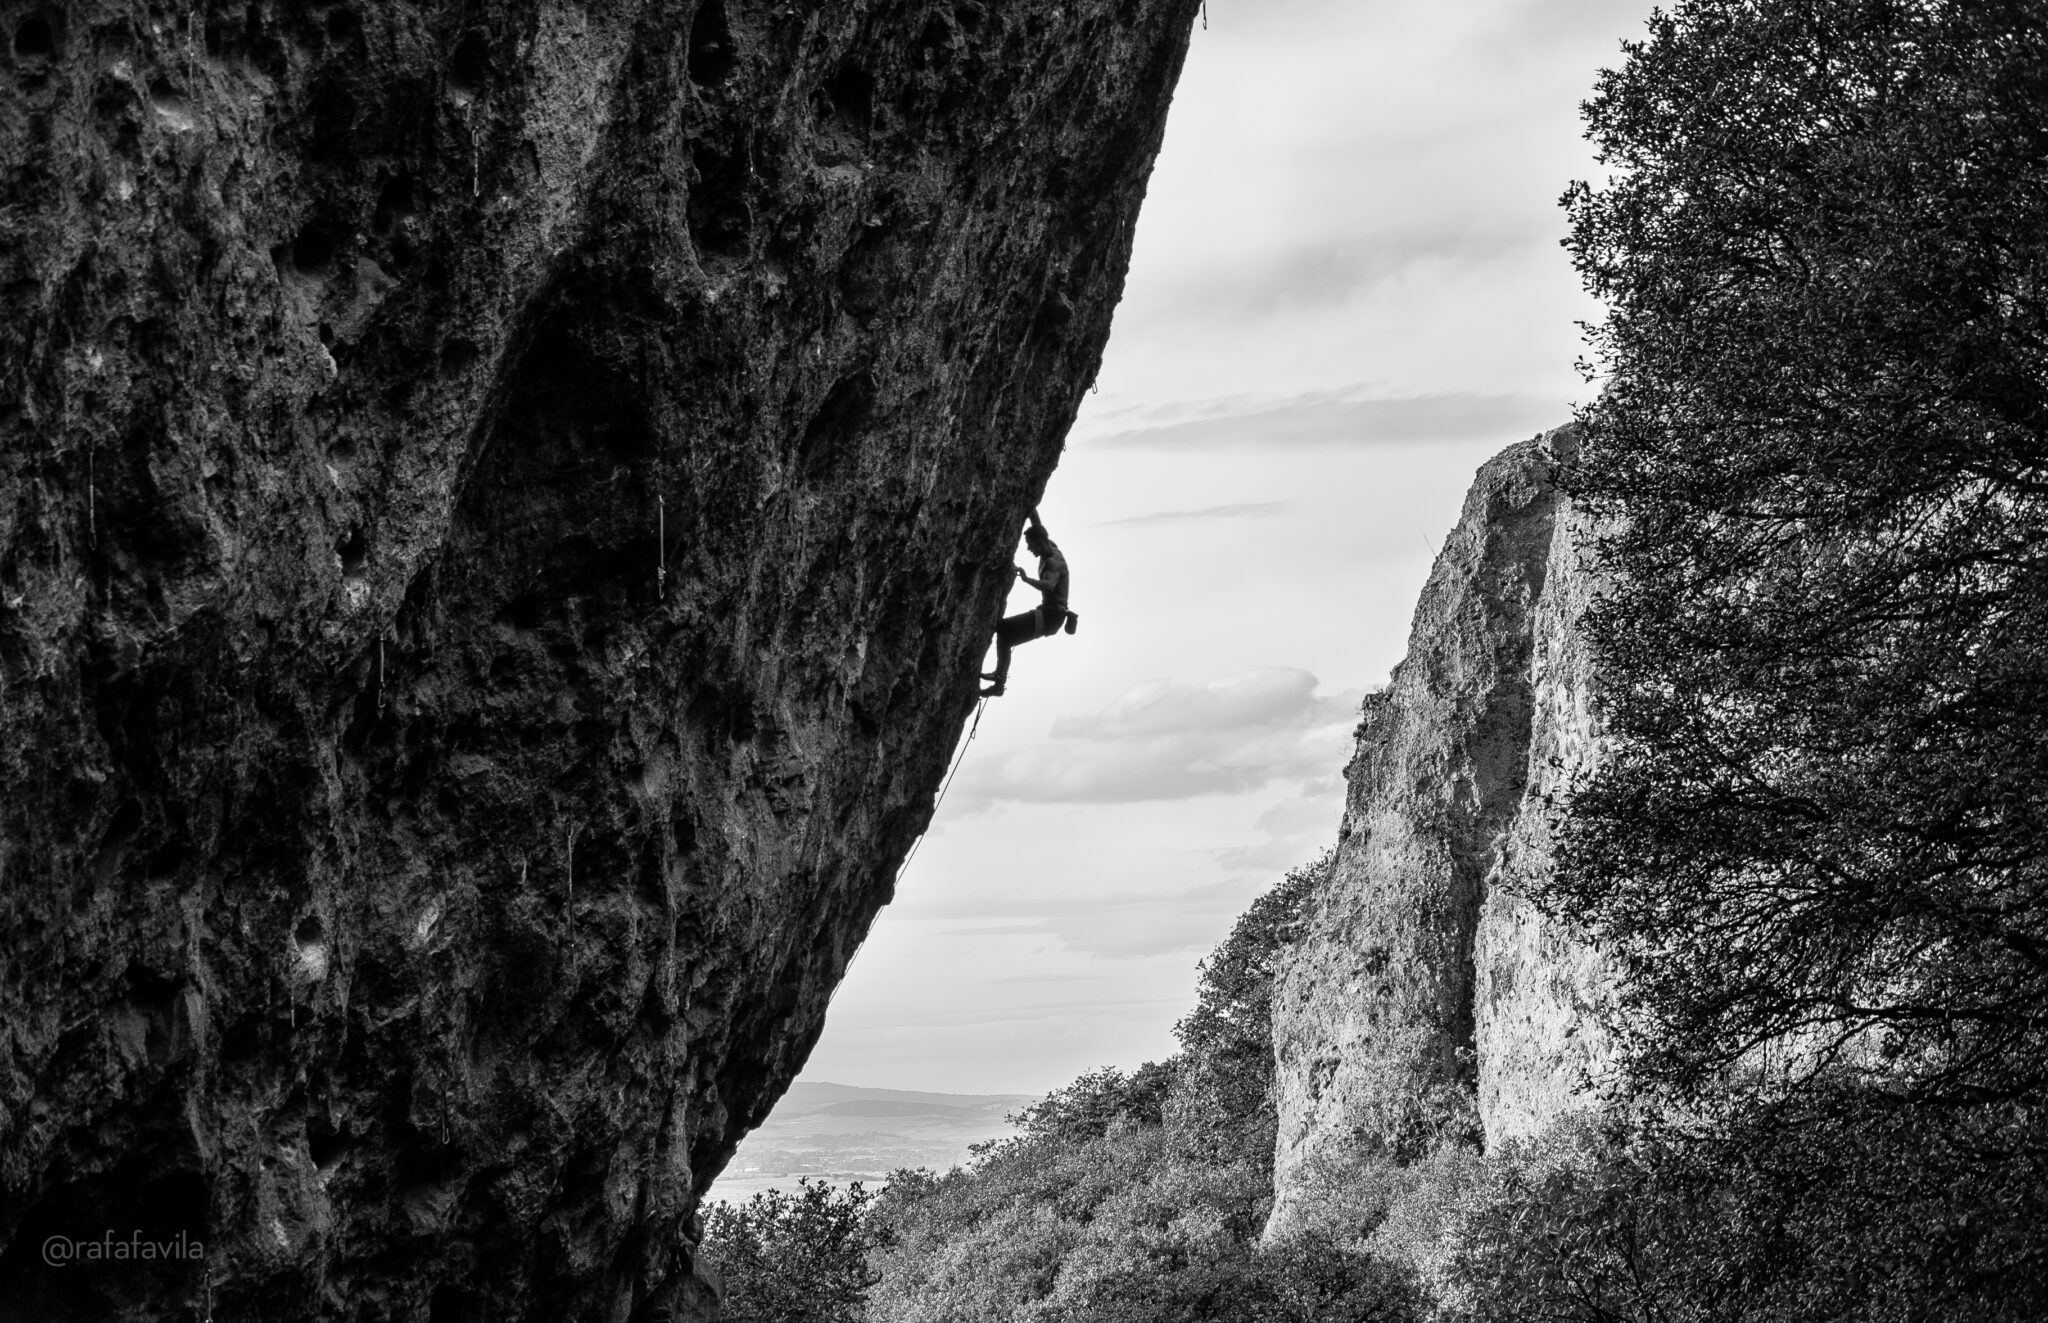 Jilotepec a rock climbing crag near to mexico city, Mondragon is climbing an overhanging wall